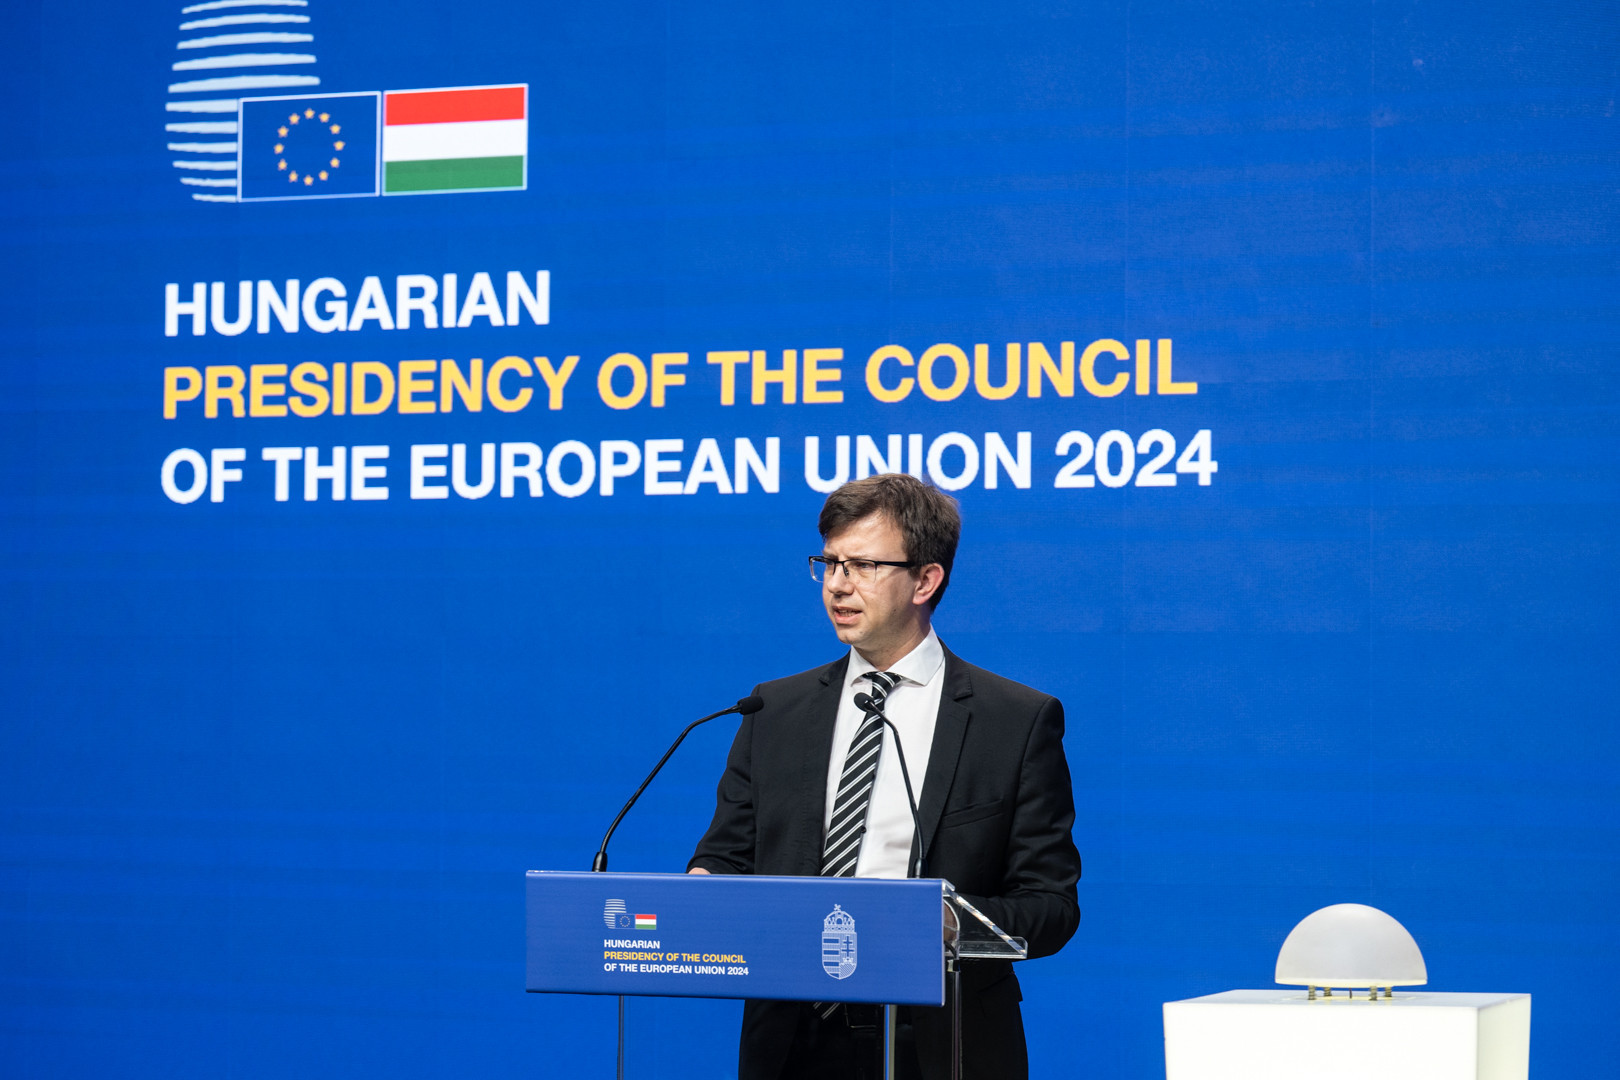 Janos Boka, ministre des Affaires européennes, dévoile le programme et les priorités de la présidence hongroise du Conseil de l’UE, lors d’une conférence de presse à Budapest. © Flickr Que peut-on attendre de la présidence hongroise du Conseil de l’Union Européenne ?